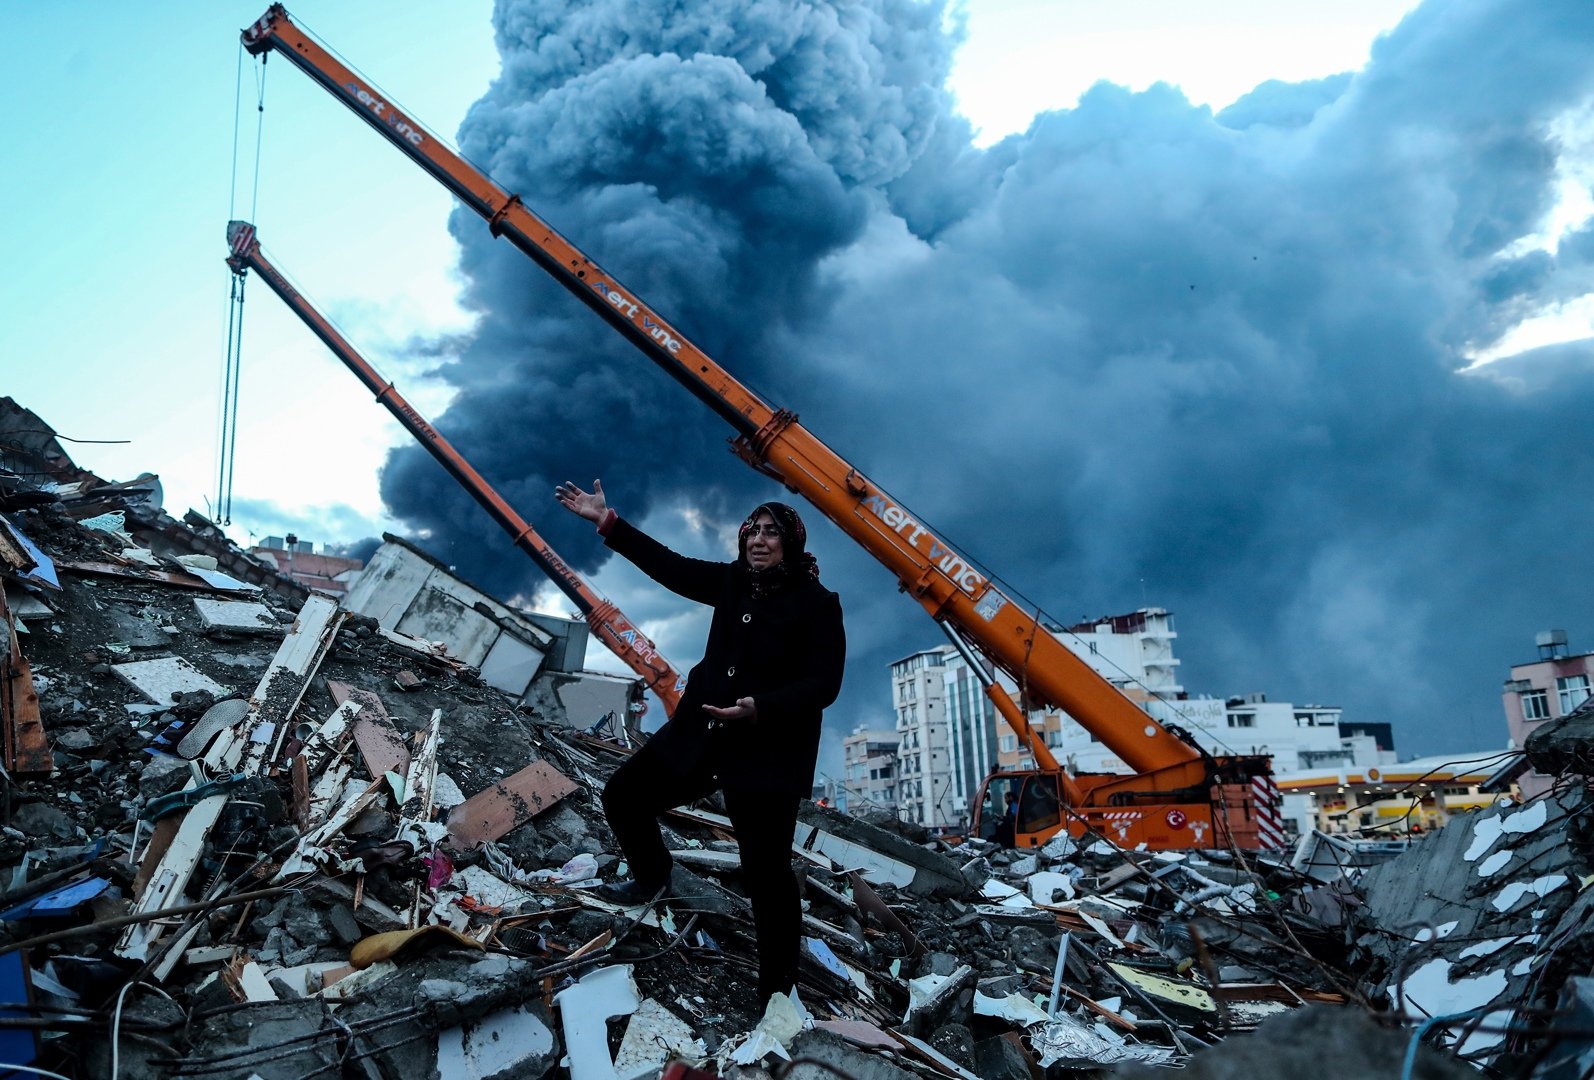 K9 de Creixell, al rescate de las víctimas del terremoto en Turquía: "No tenemos mucho tiempo"